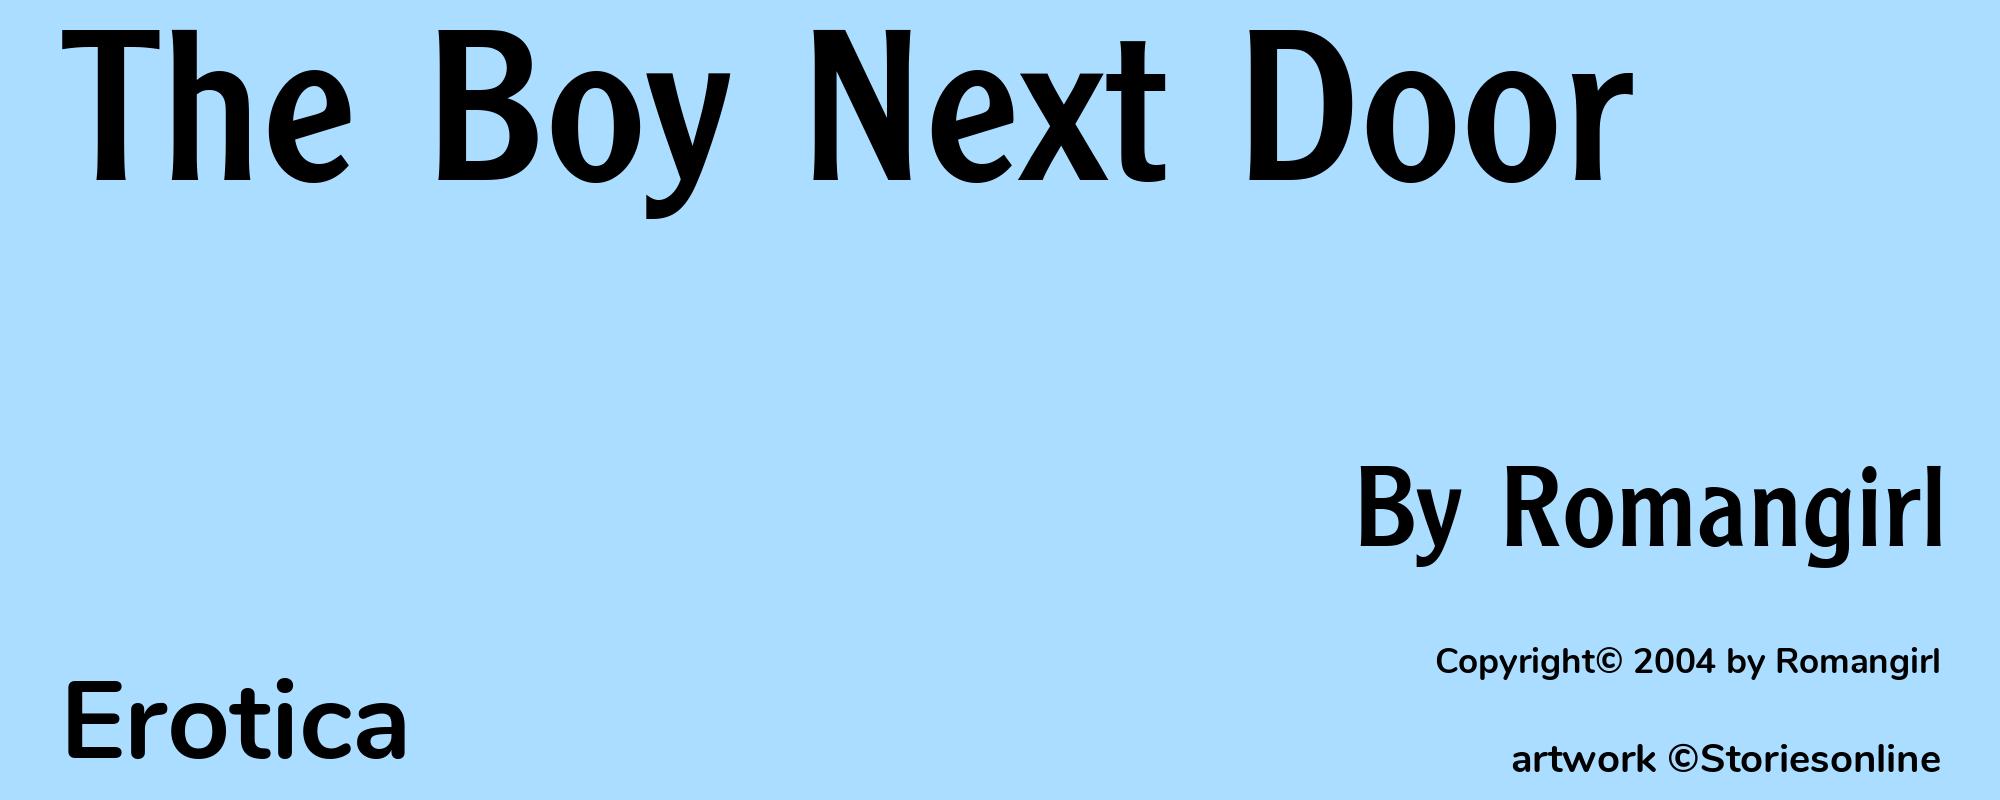 The Boy Next Door - Cover